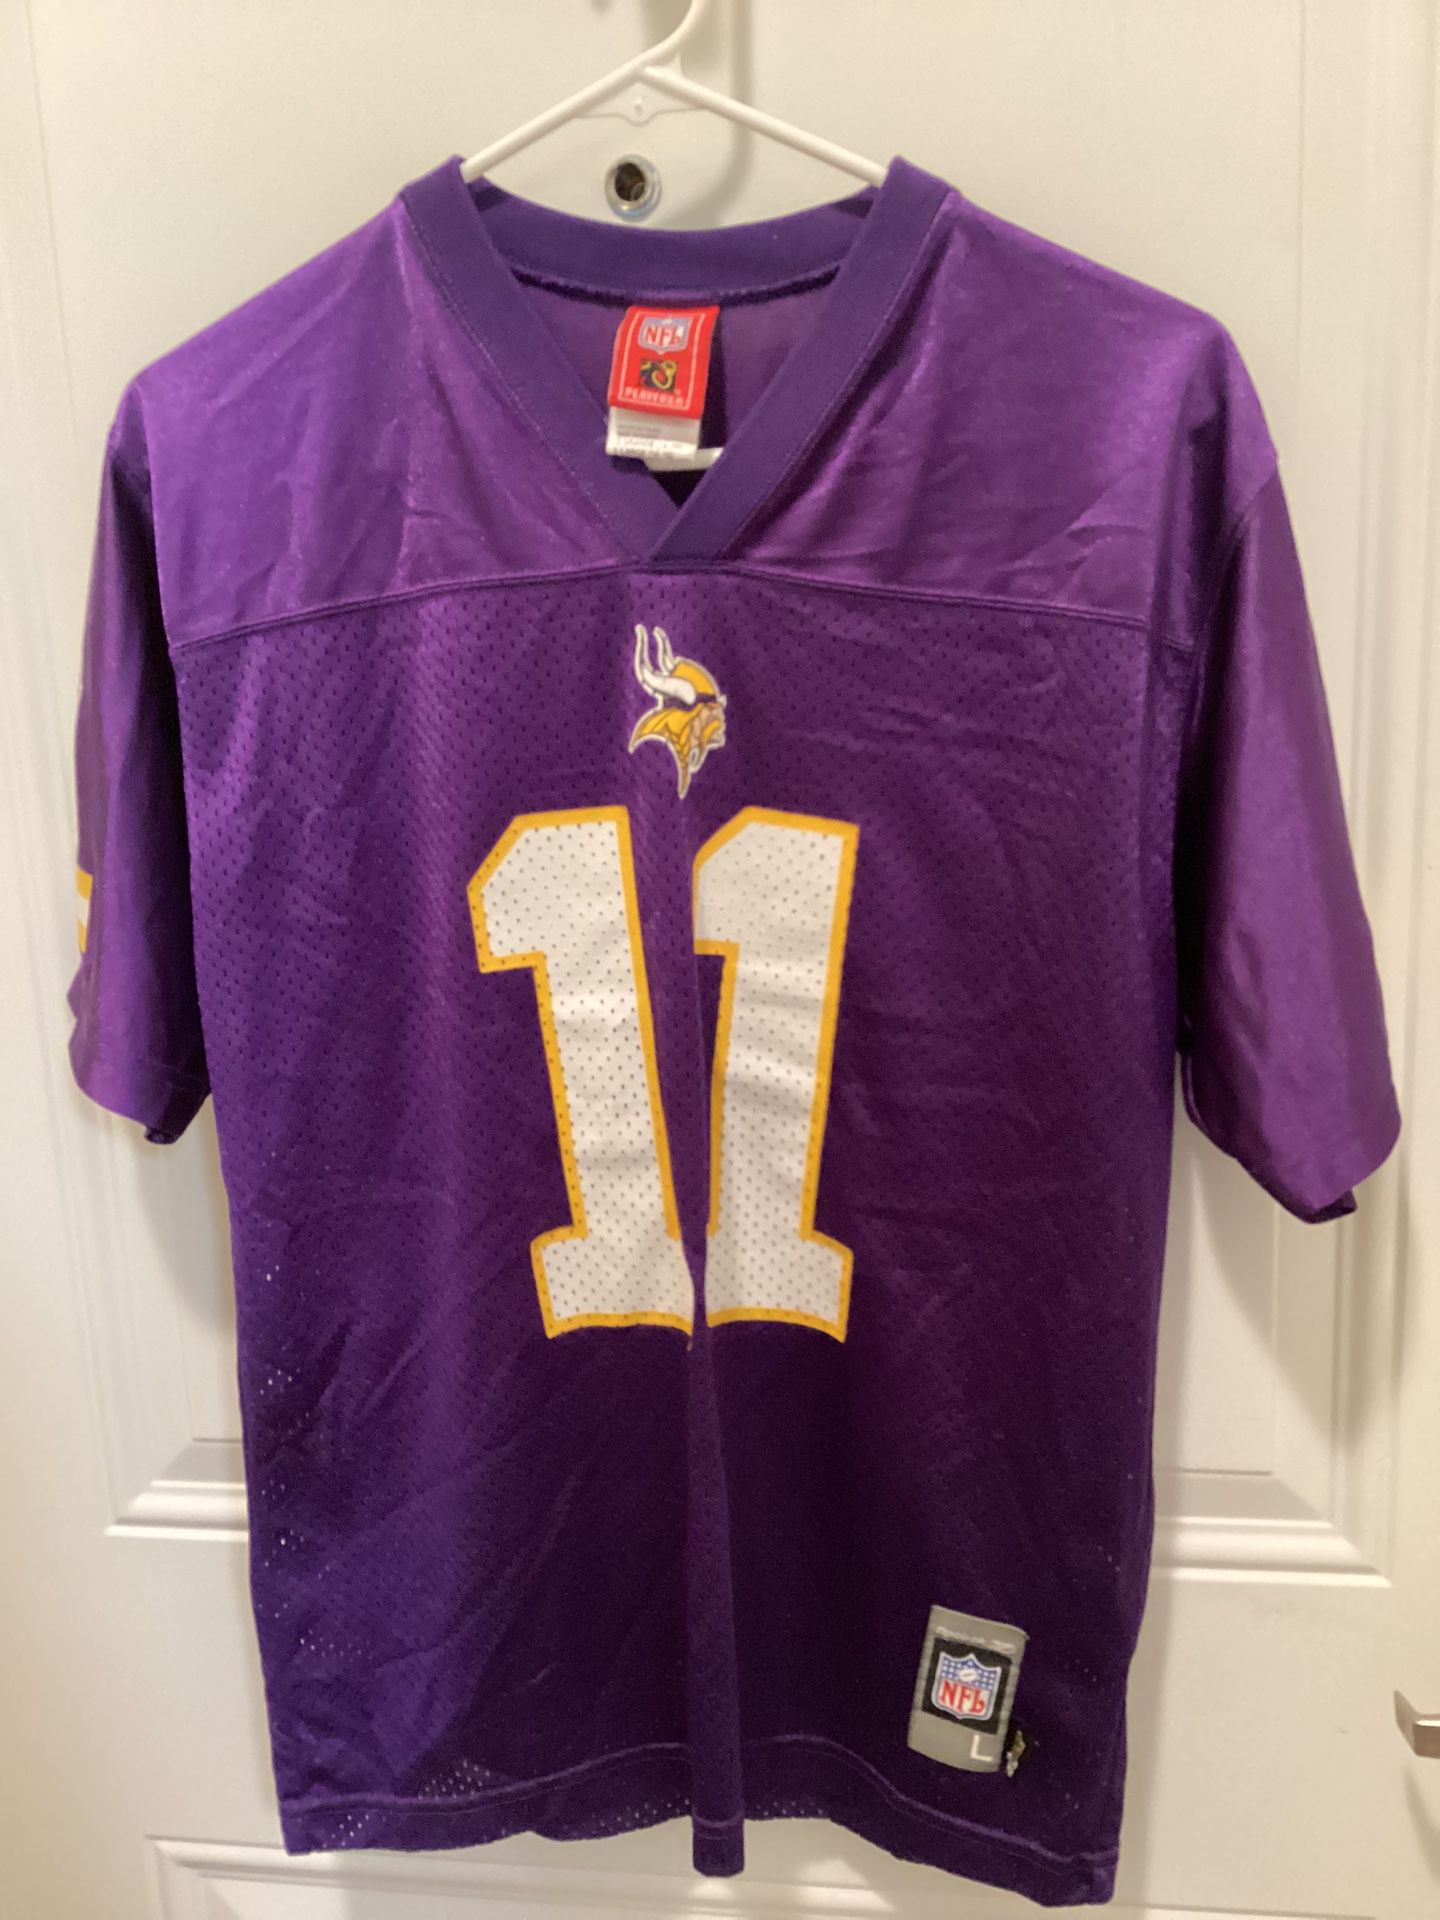 Reebok NFL Culpepper 11 Vikings Kids Football Jersey Size L 14-16 Purple